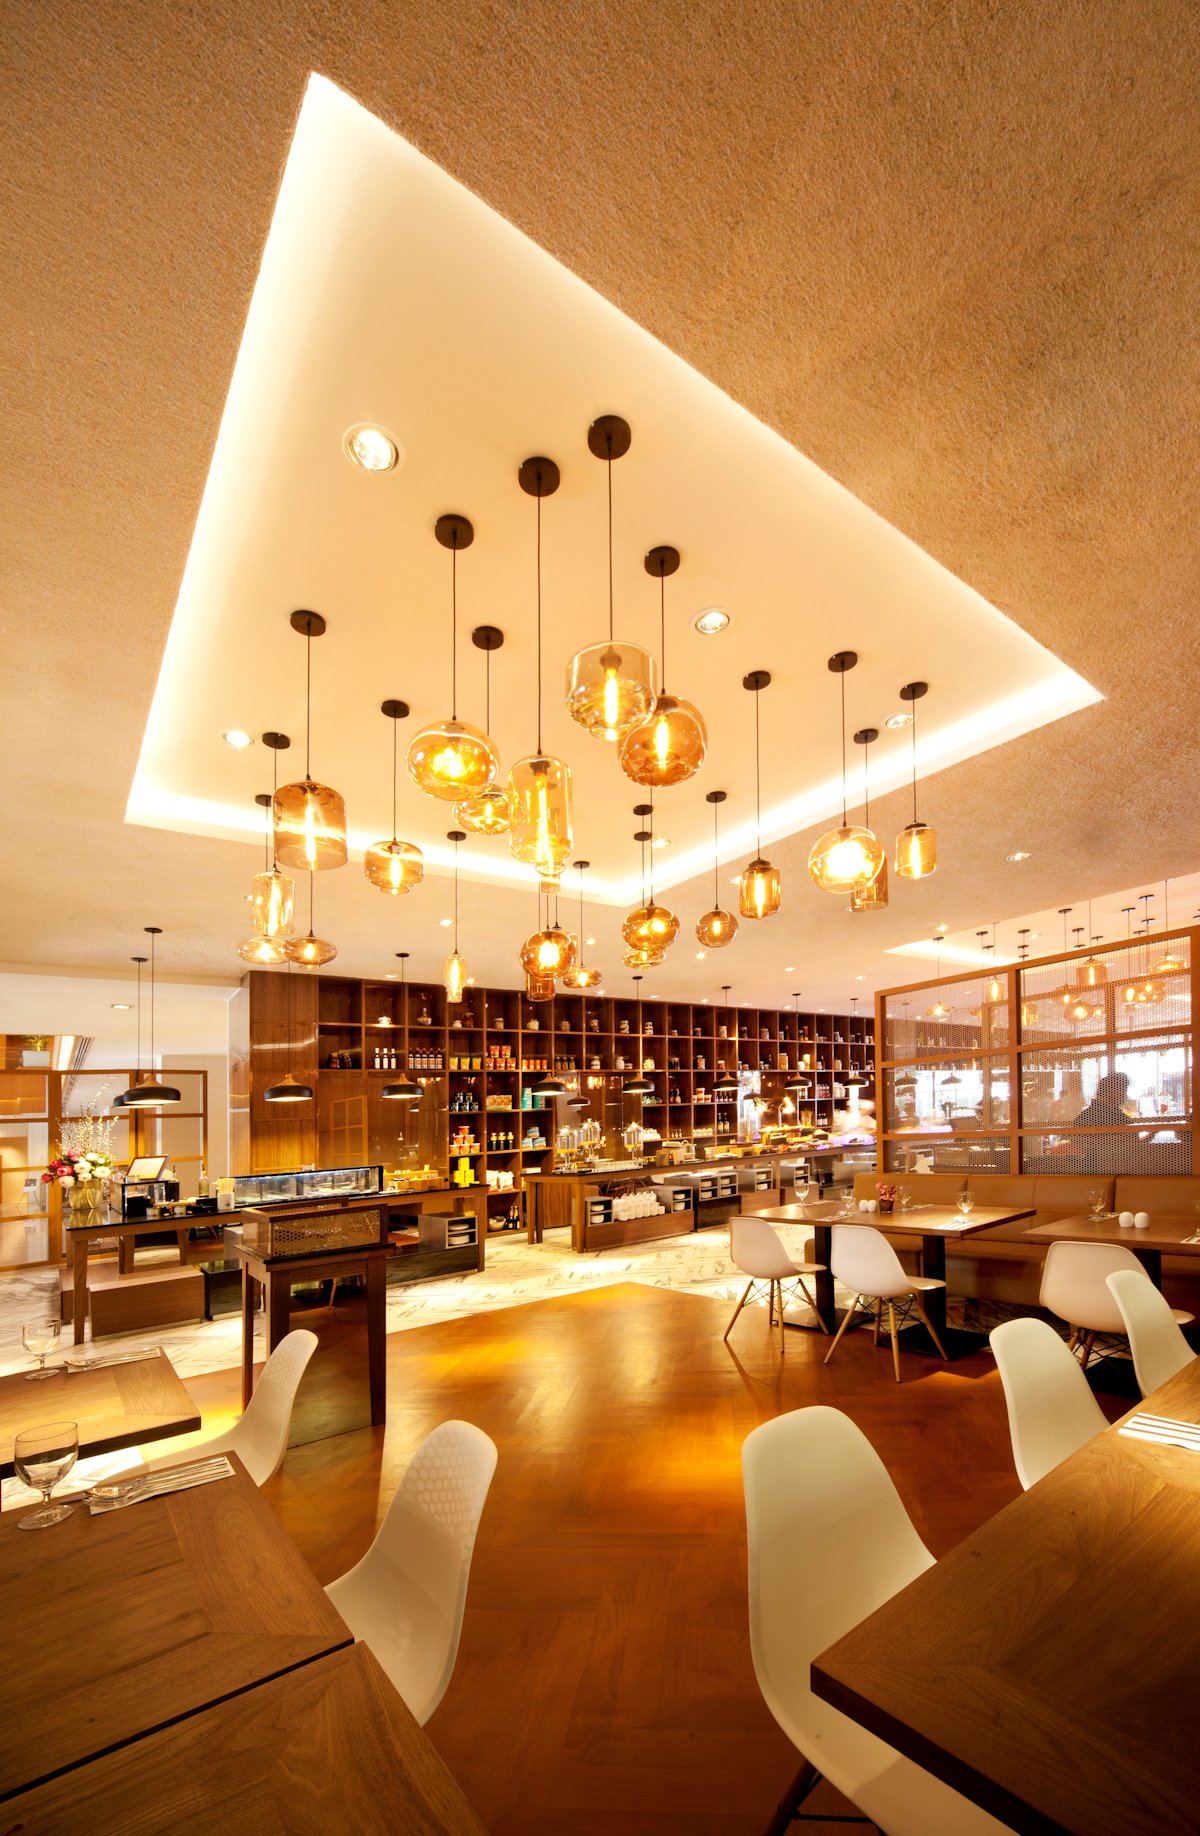 新加坡咖啡厅Element Café by designphase dba-16